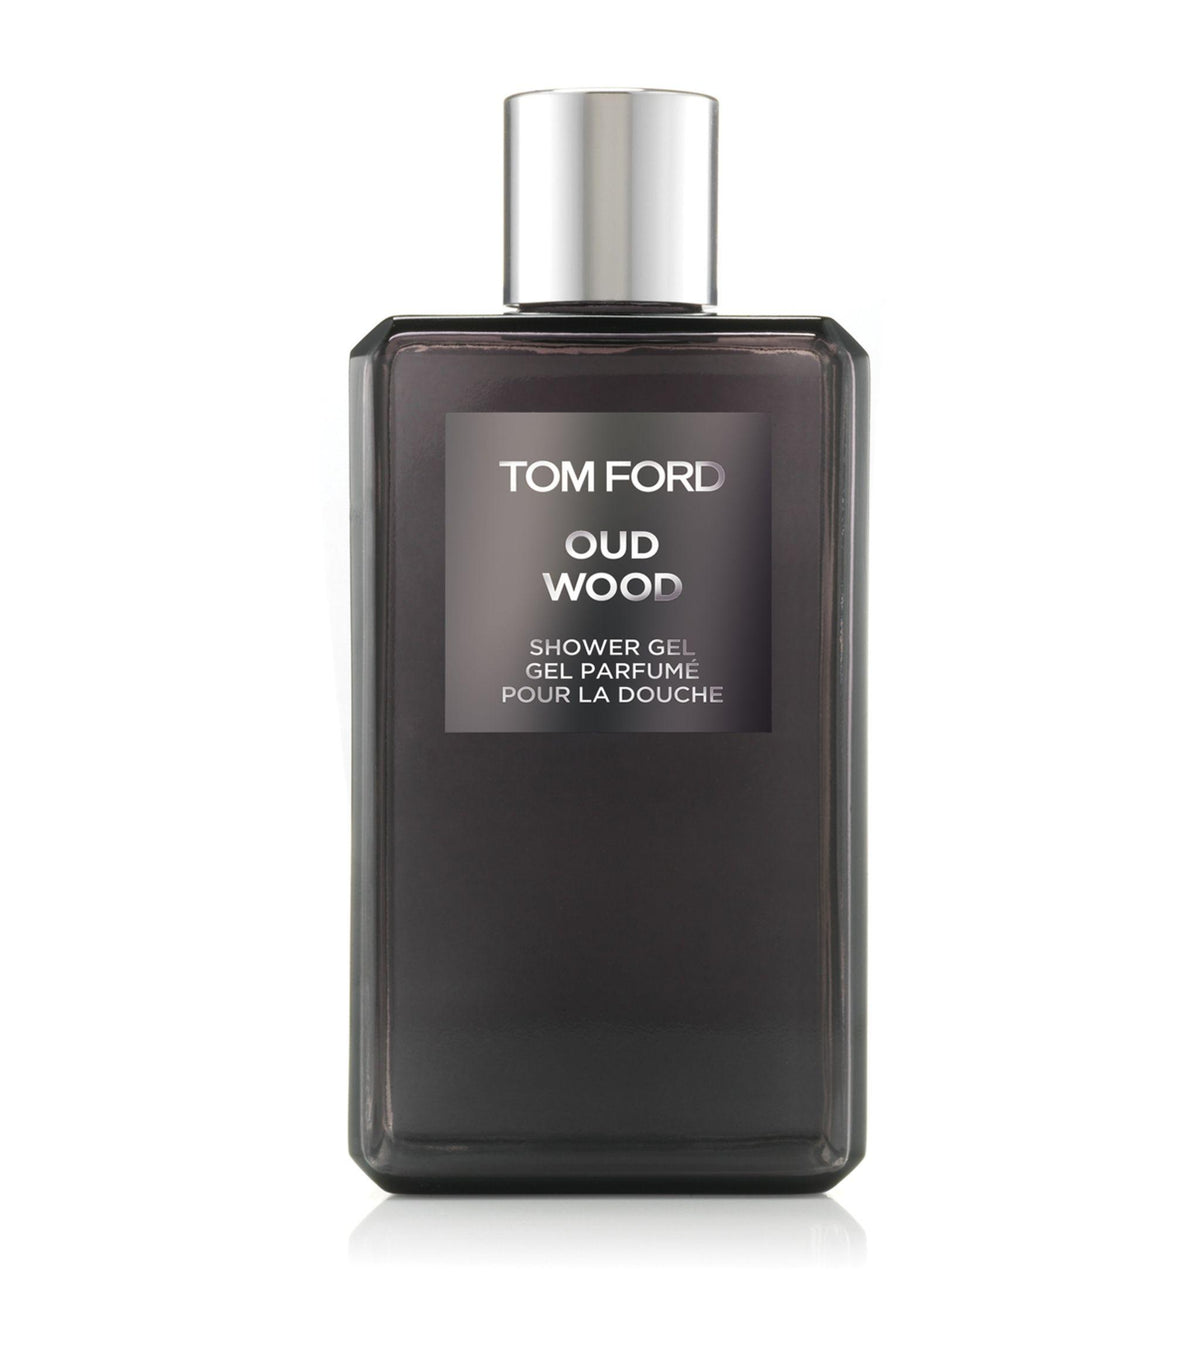 Tom Ford Oud Wood Shower Gel 250ml - Perfume Oasis